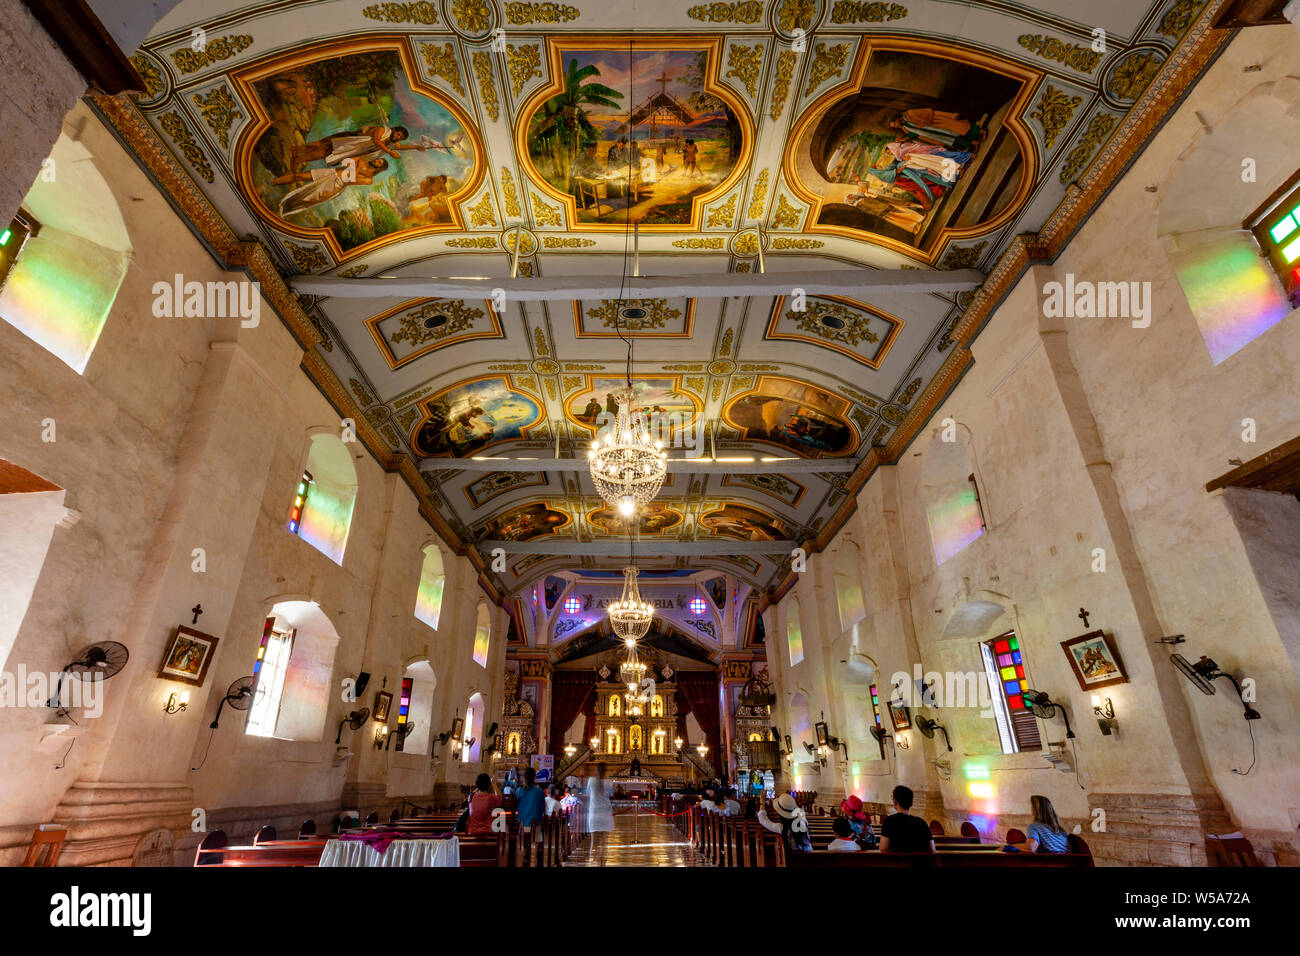 L'intérieur de l'Eglise de Baclayon, Bohol, Philippines Banque D'Images